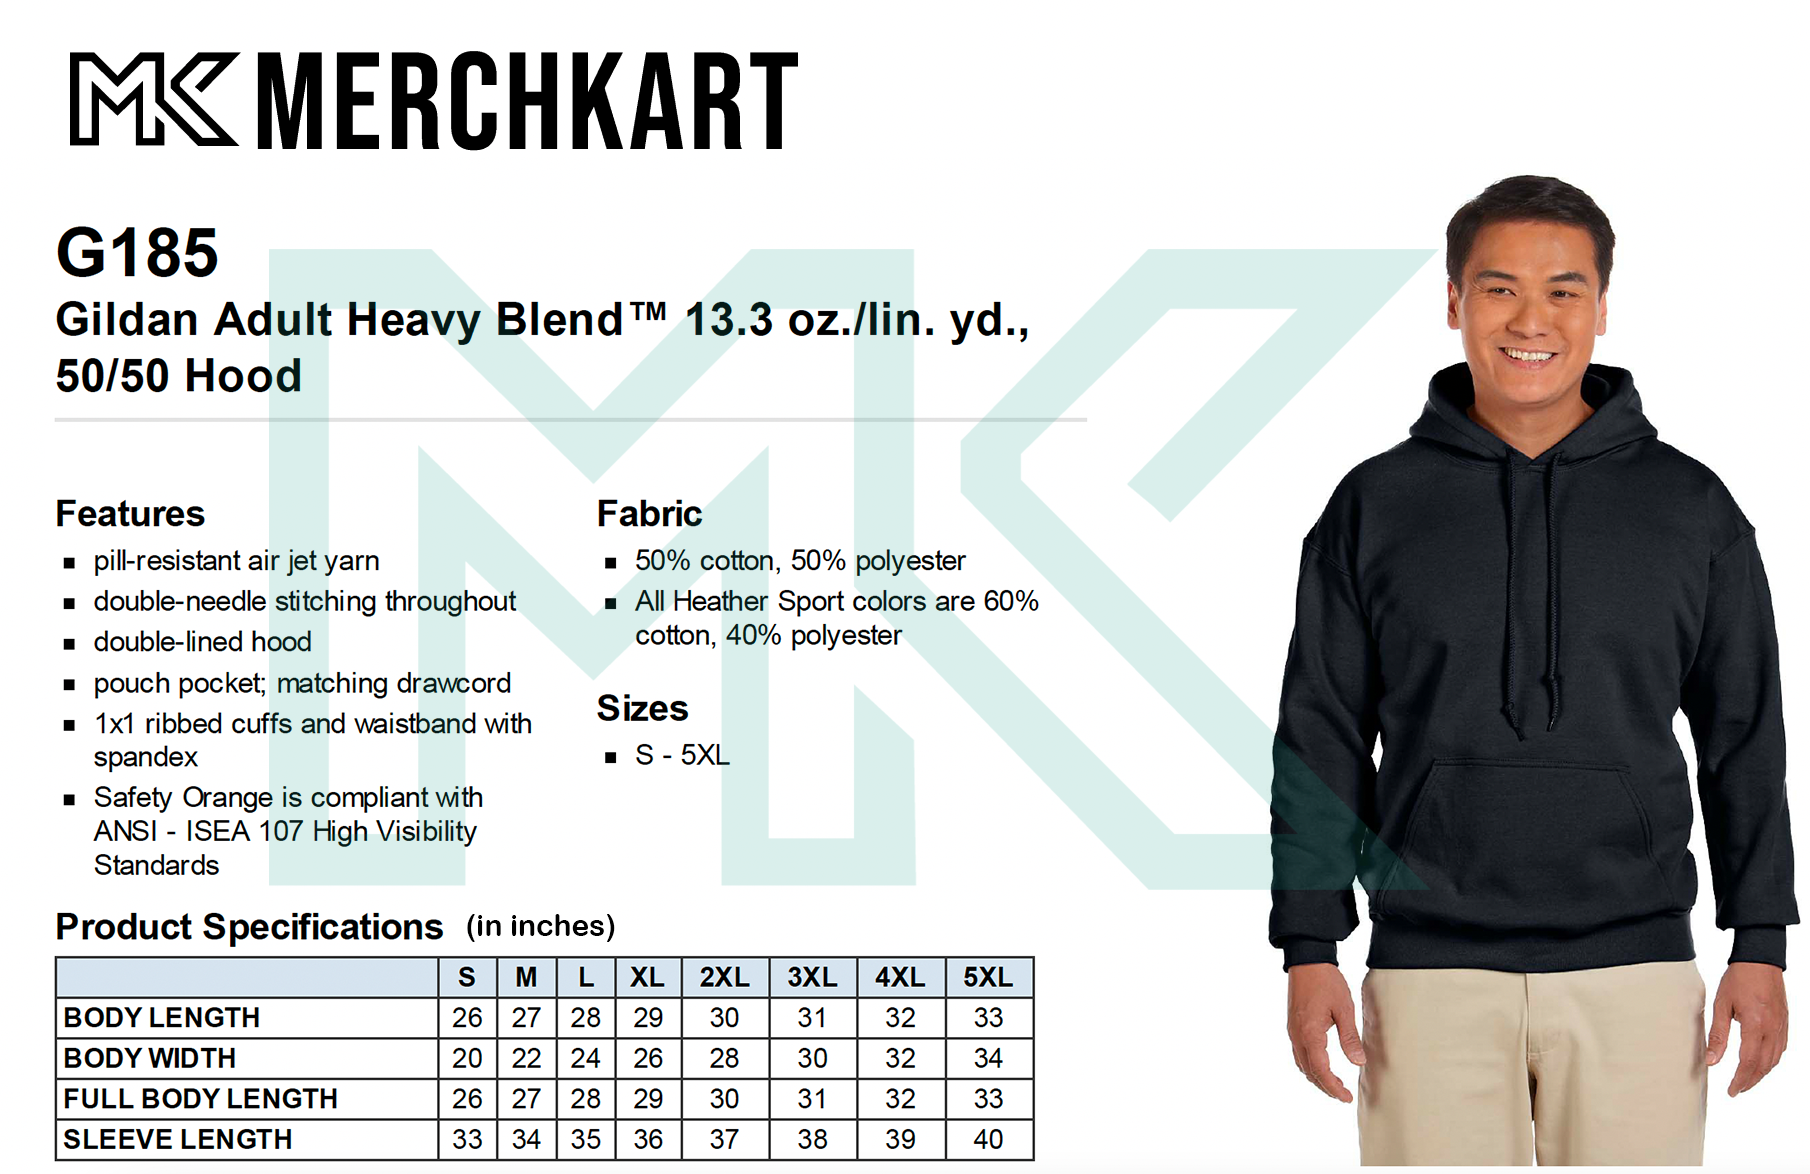 Minecraft Sweatshirt, Pullover - Gaming Xbox Pullovers - Minecraft Merchandise -Merchkart Hoodies